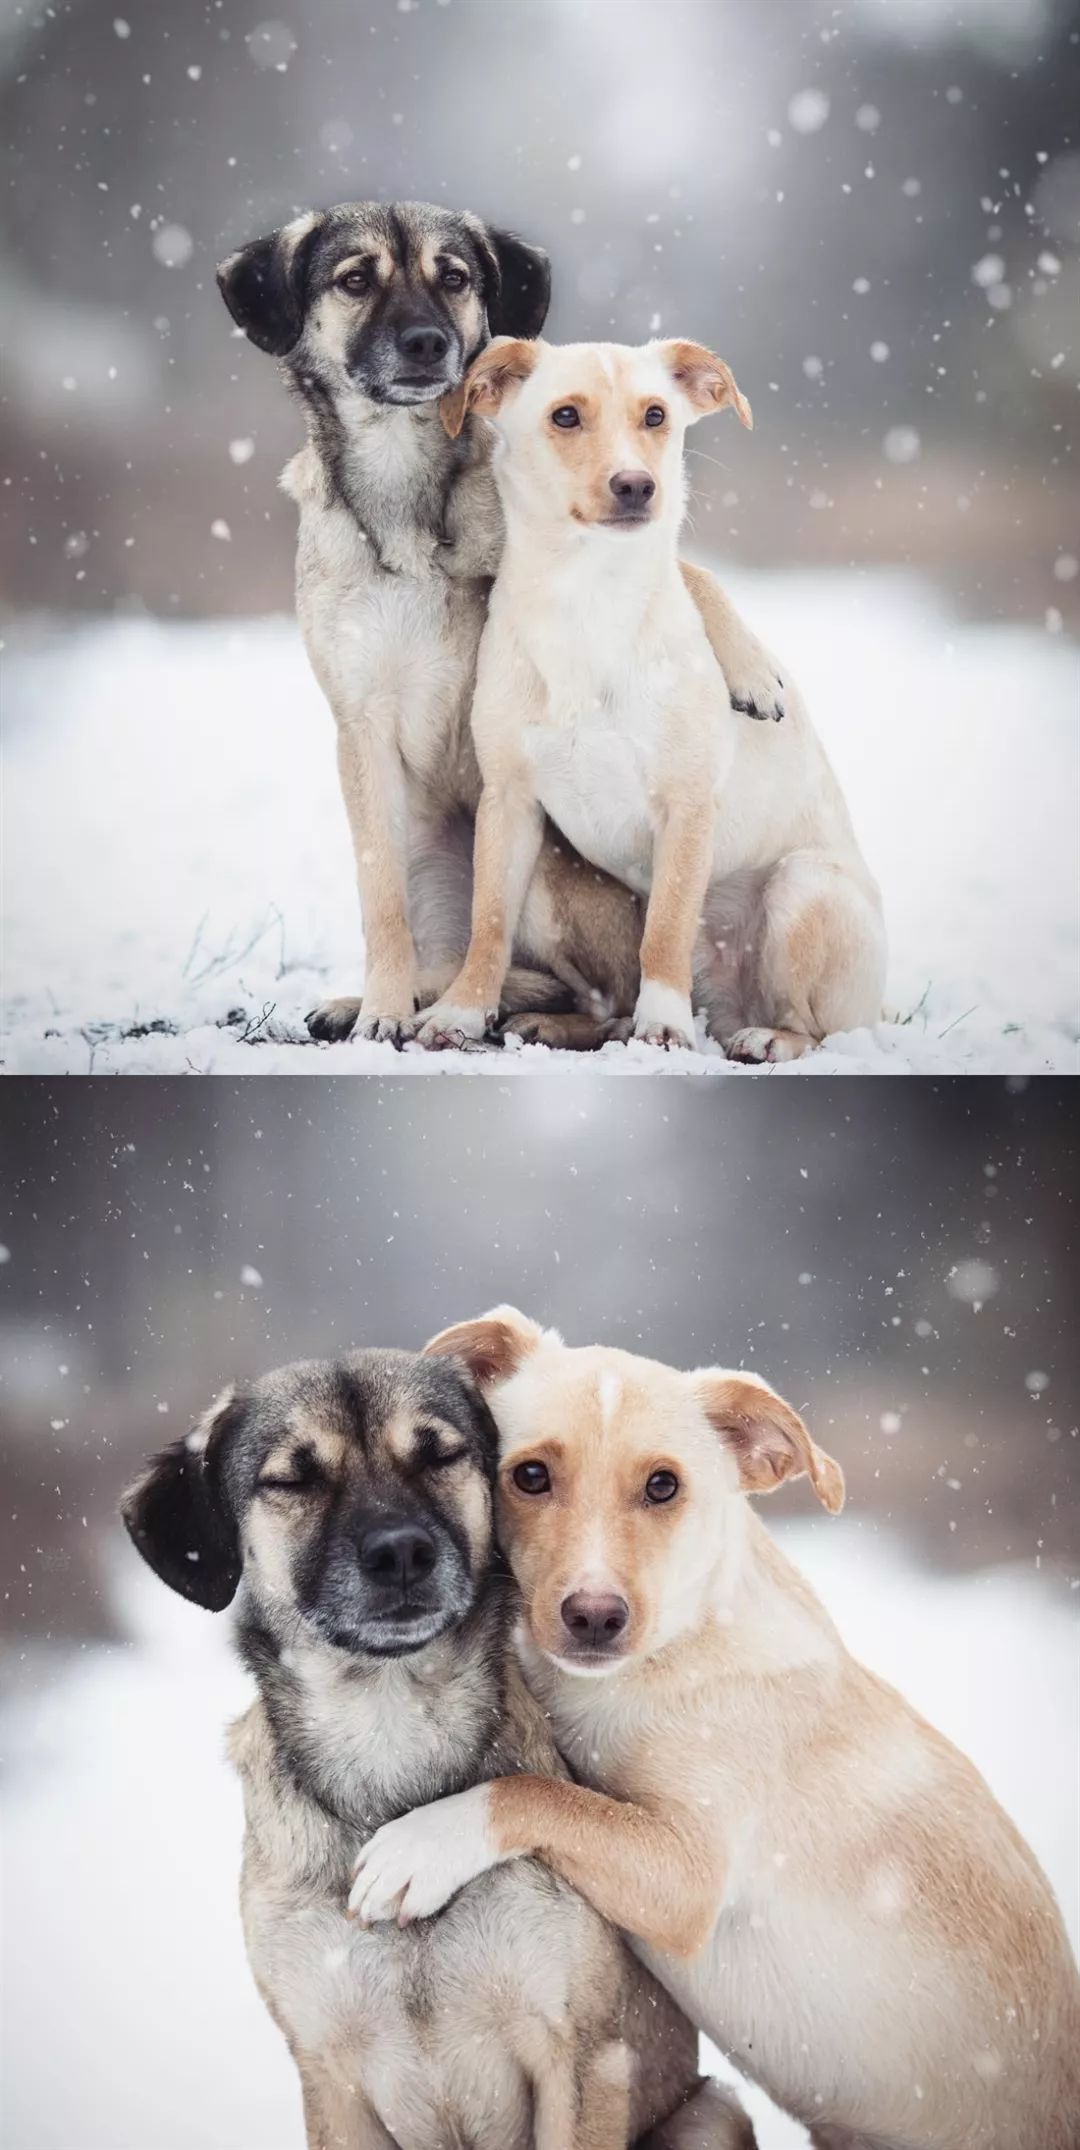 透过这两只狗子的照片,我们看到了最纯真的友情!